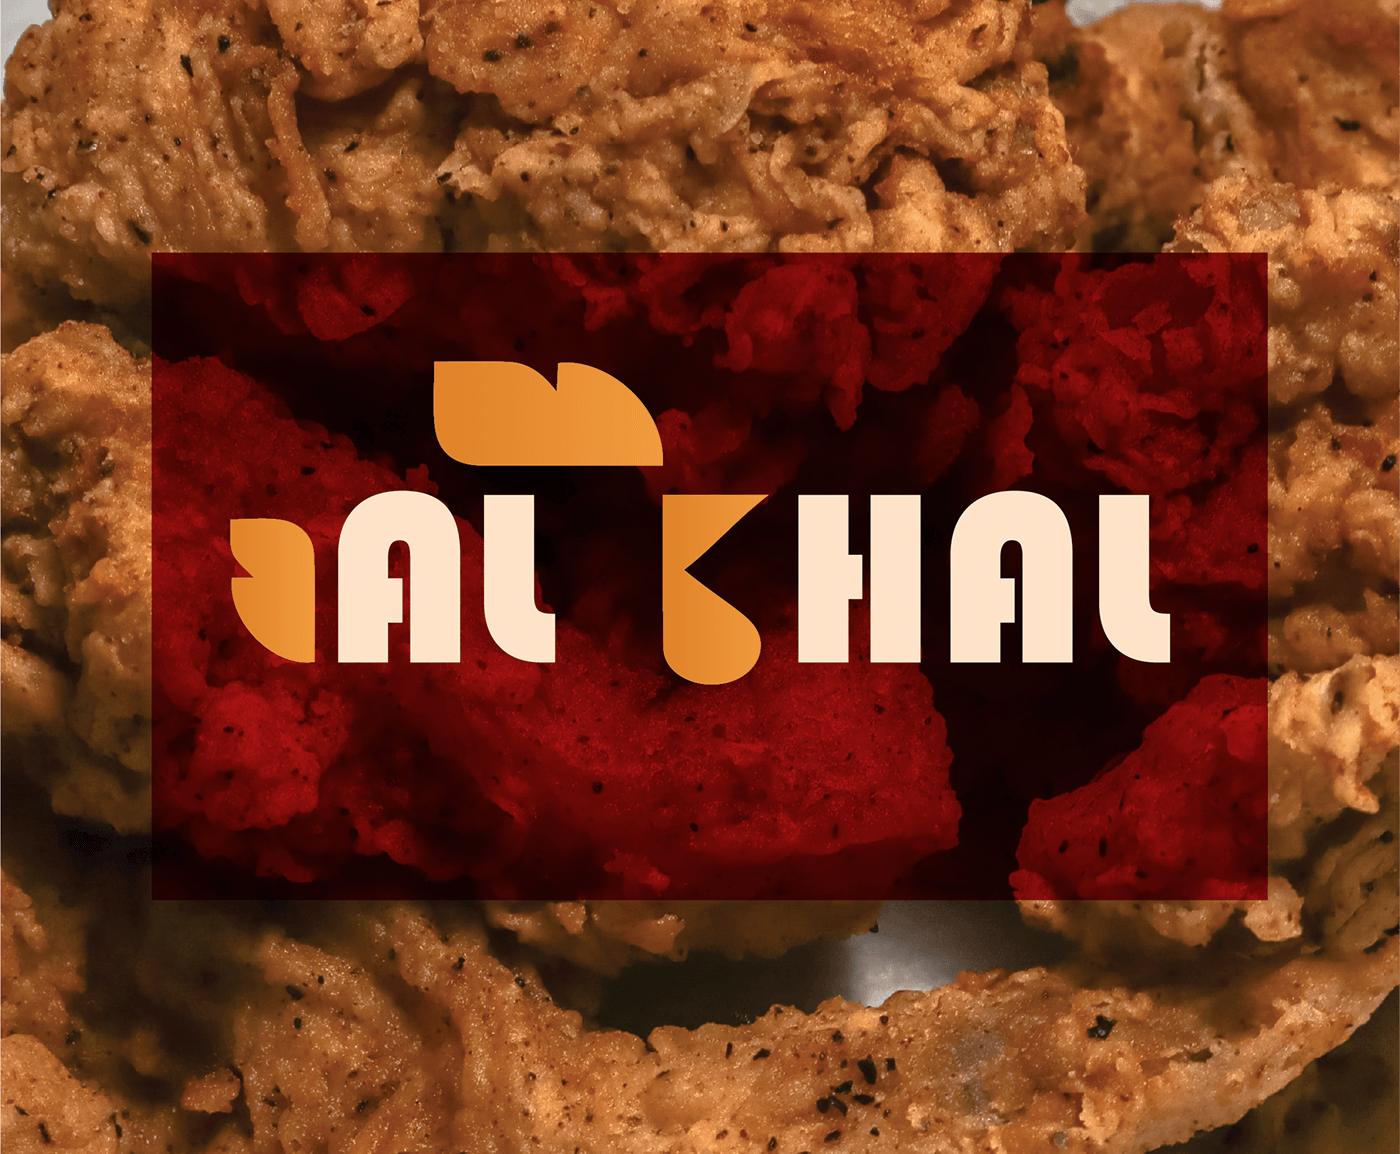 Food  chicken crispy Crispy Chicken junk food Fast food jordan Logo Design brand identity adobe illustrator